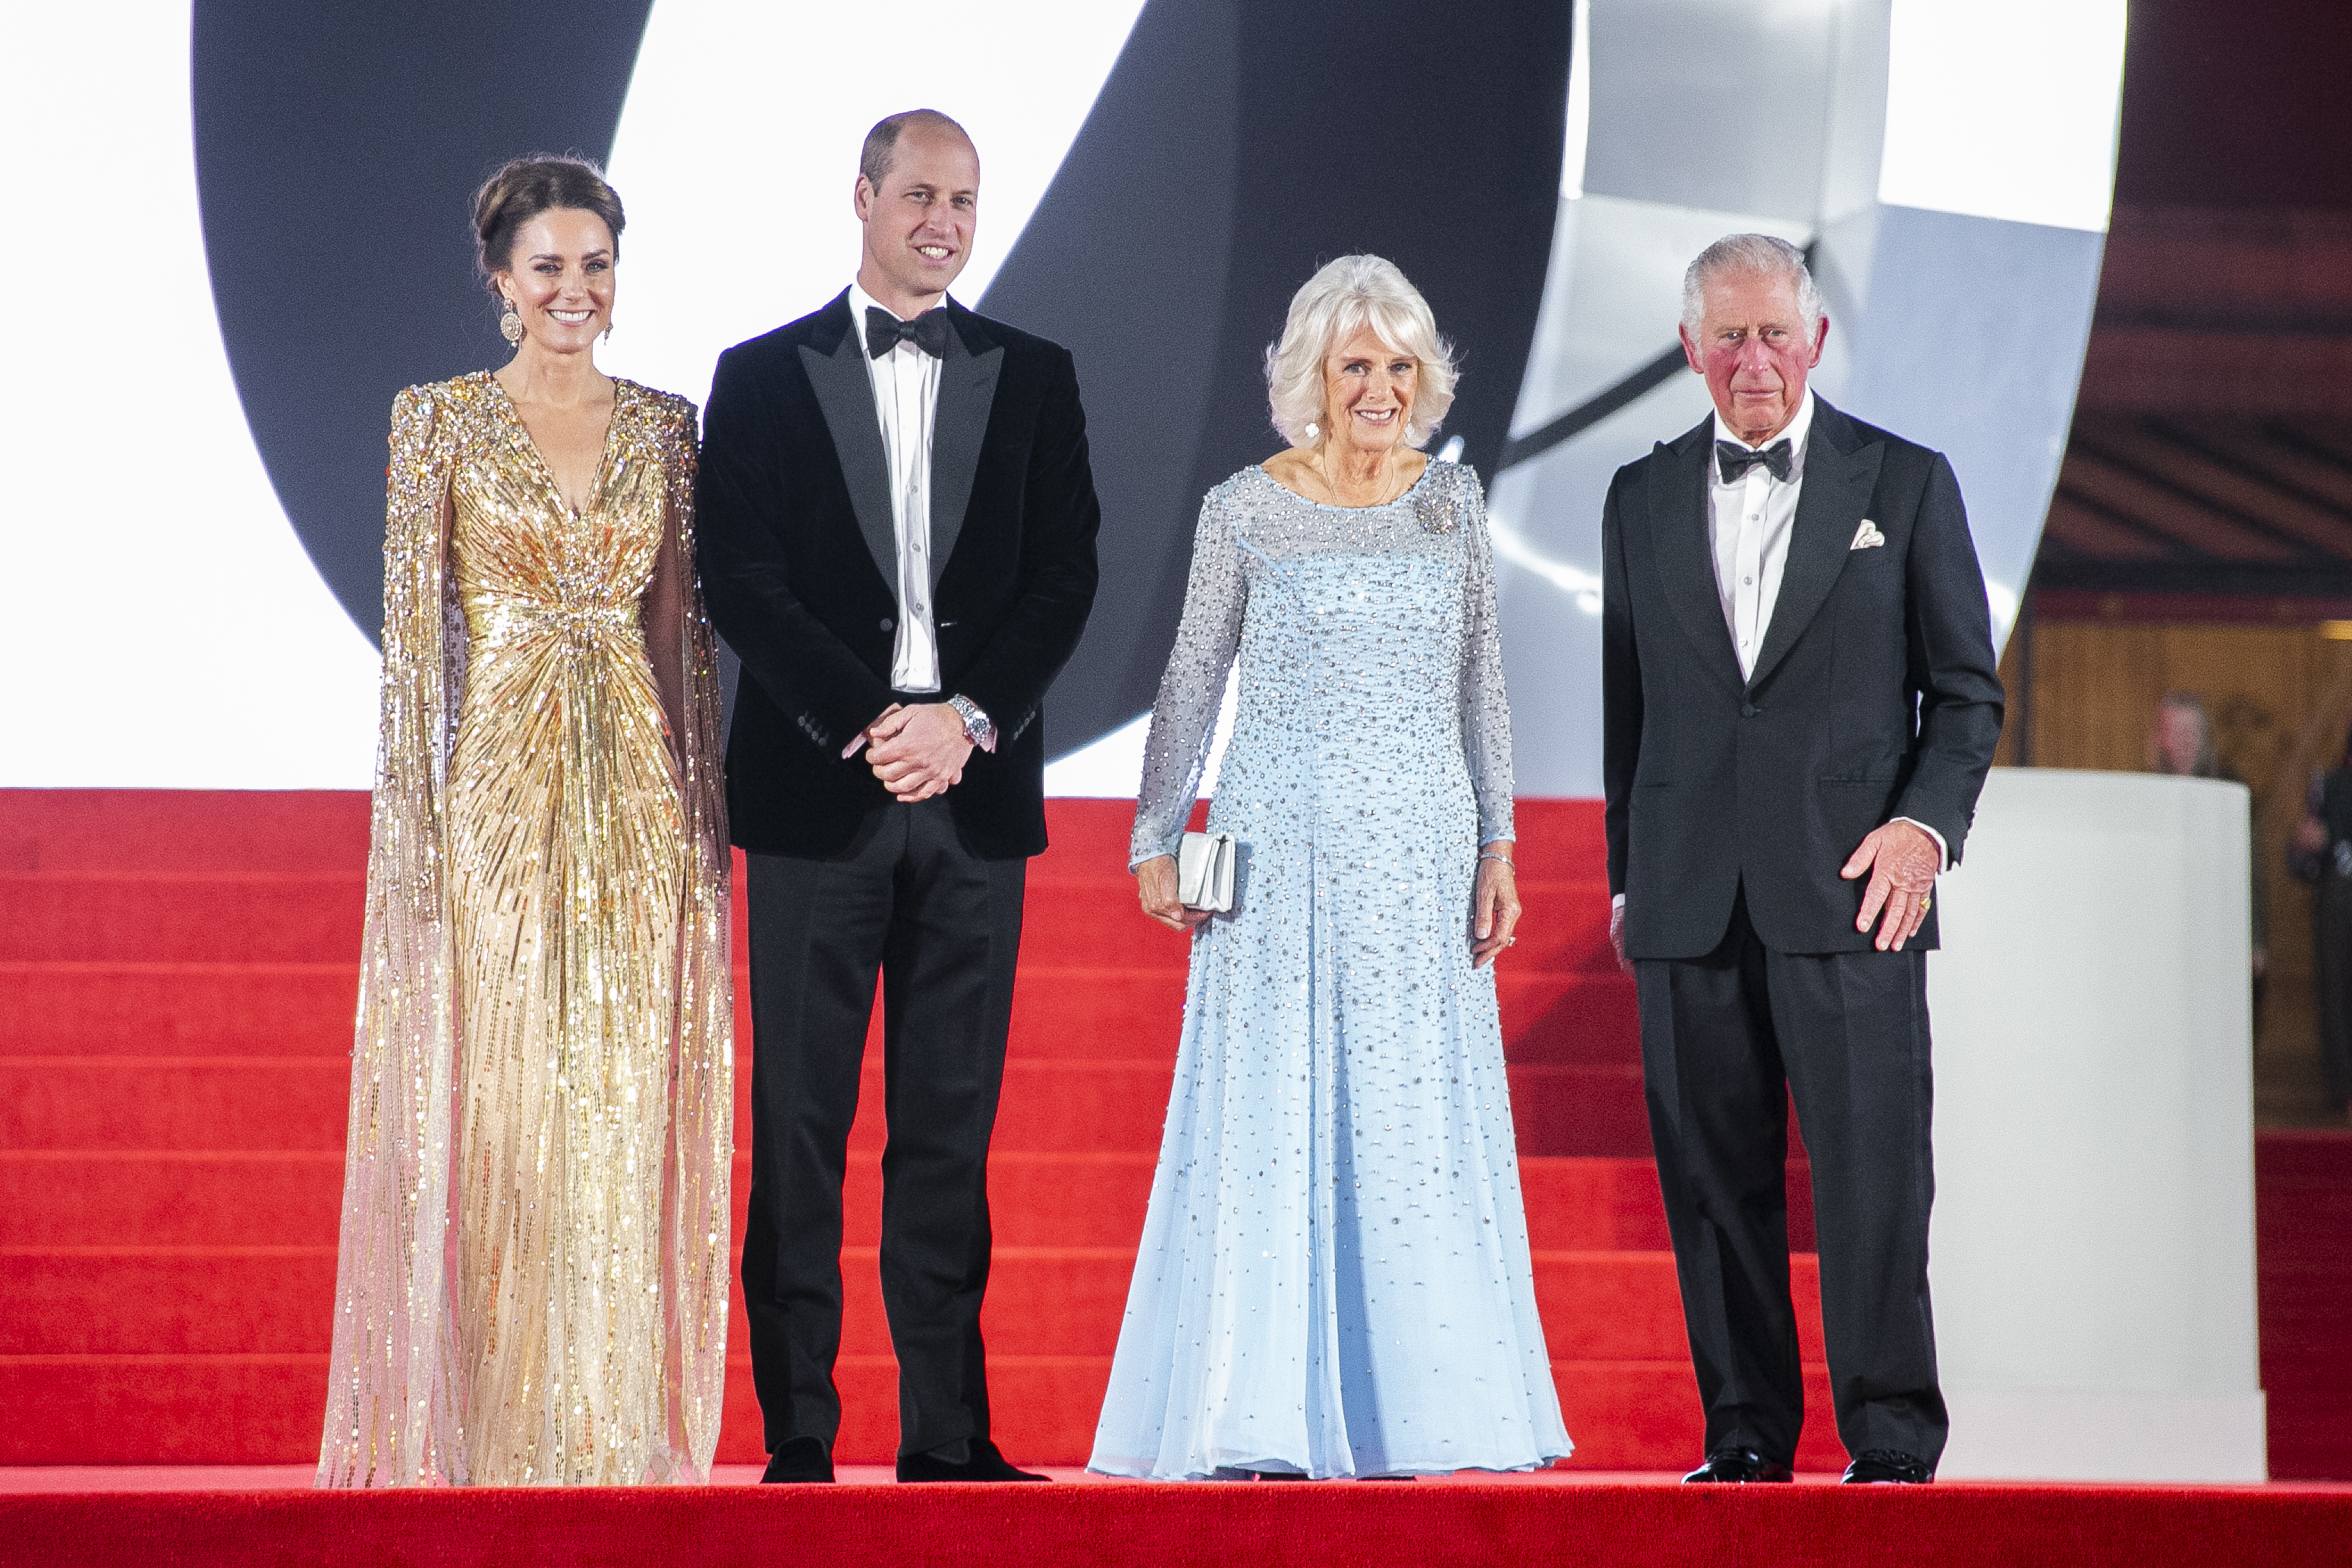 El príncipe Carlos de Gran Bretaña, de izquierda a derecha, su esposa Camilla, la duquesa de Cornualles, Kate la duquesa de Cambridge y su esposo, el príncipe William de Gran Bretaña, son fotografiados a su llegada para el estreno mundial de la película 'No Time To Die', en Londres el martes, sept. 28, 2021. (Foto de Joel C Ryan / Invision / AP)